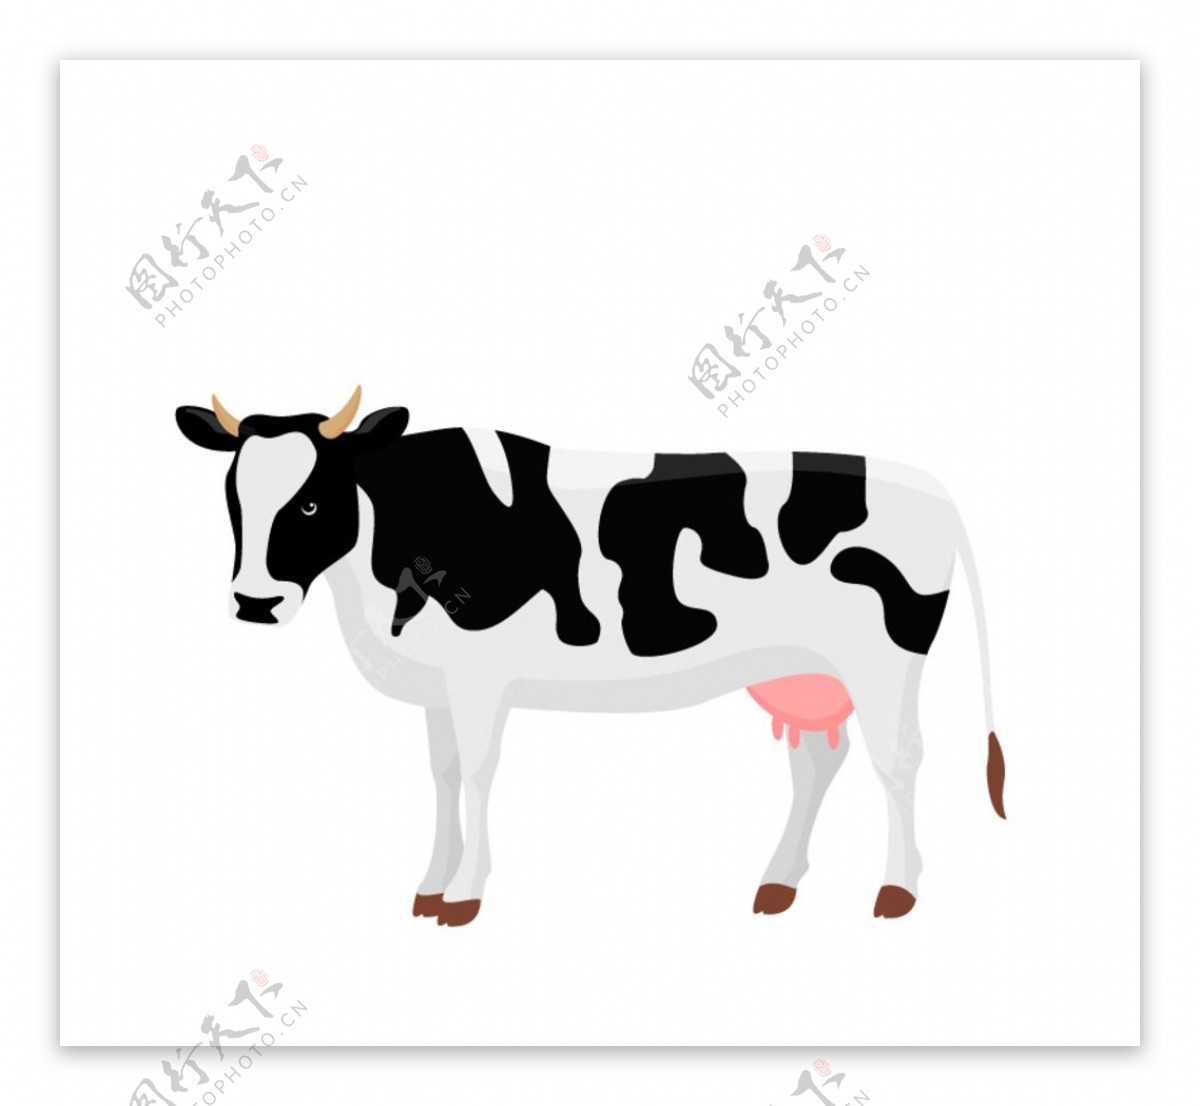 黑白花纹奶牛设计矢量素材